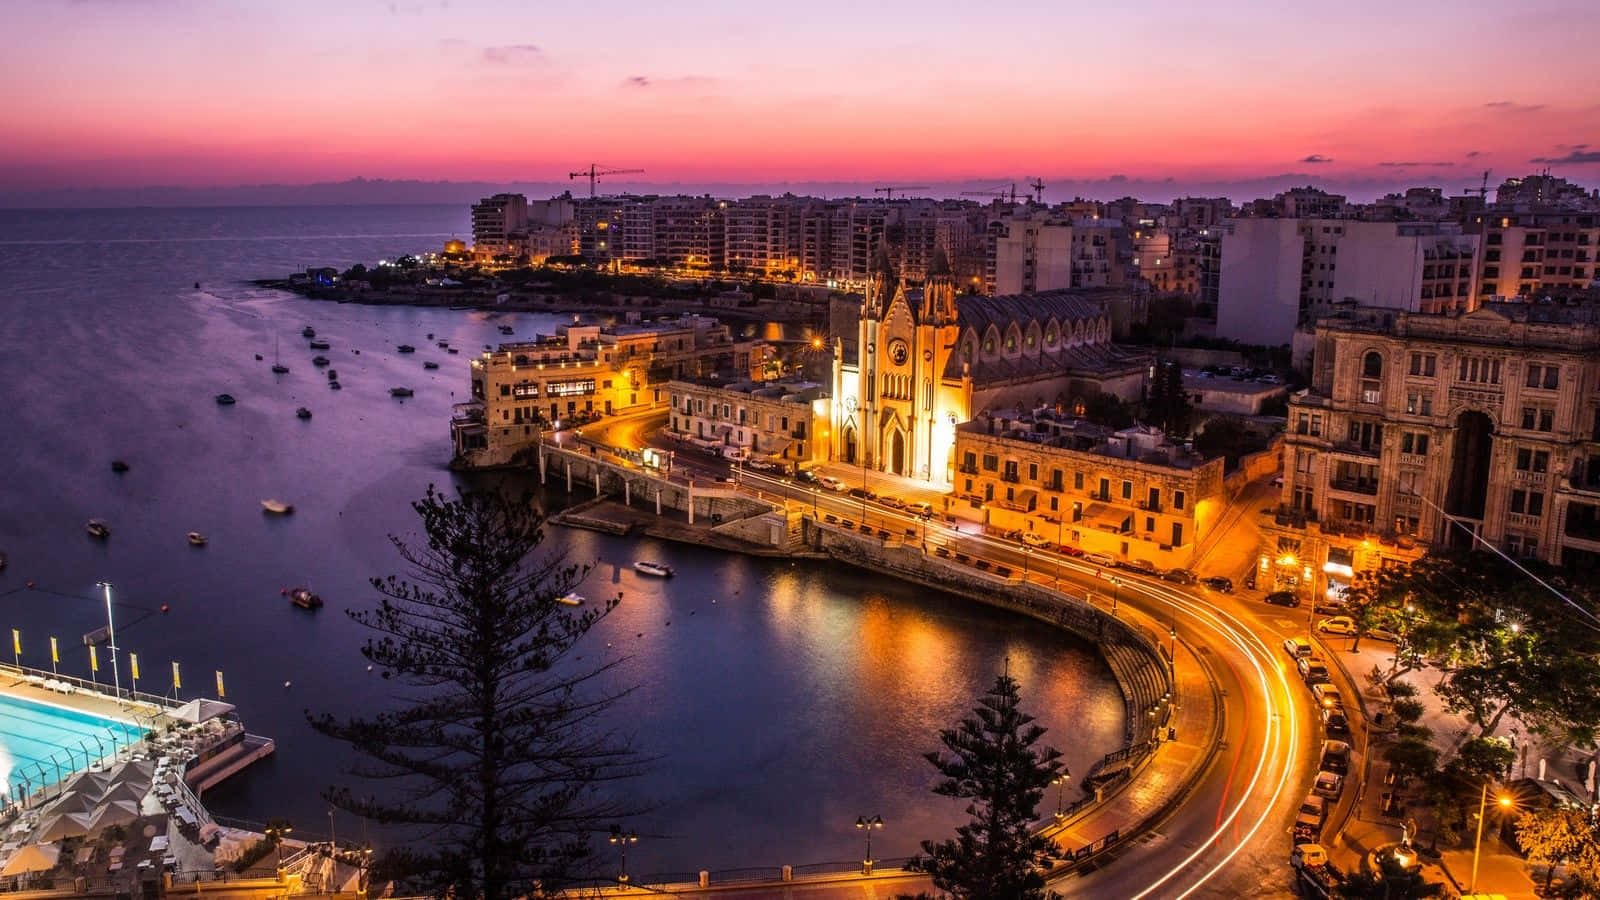 Impresionantecosta De Malta Al Atardecer